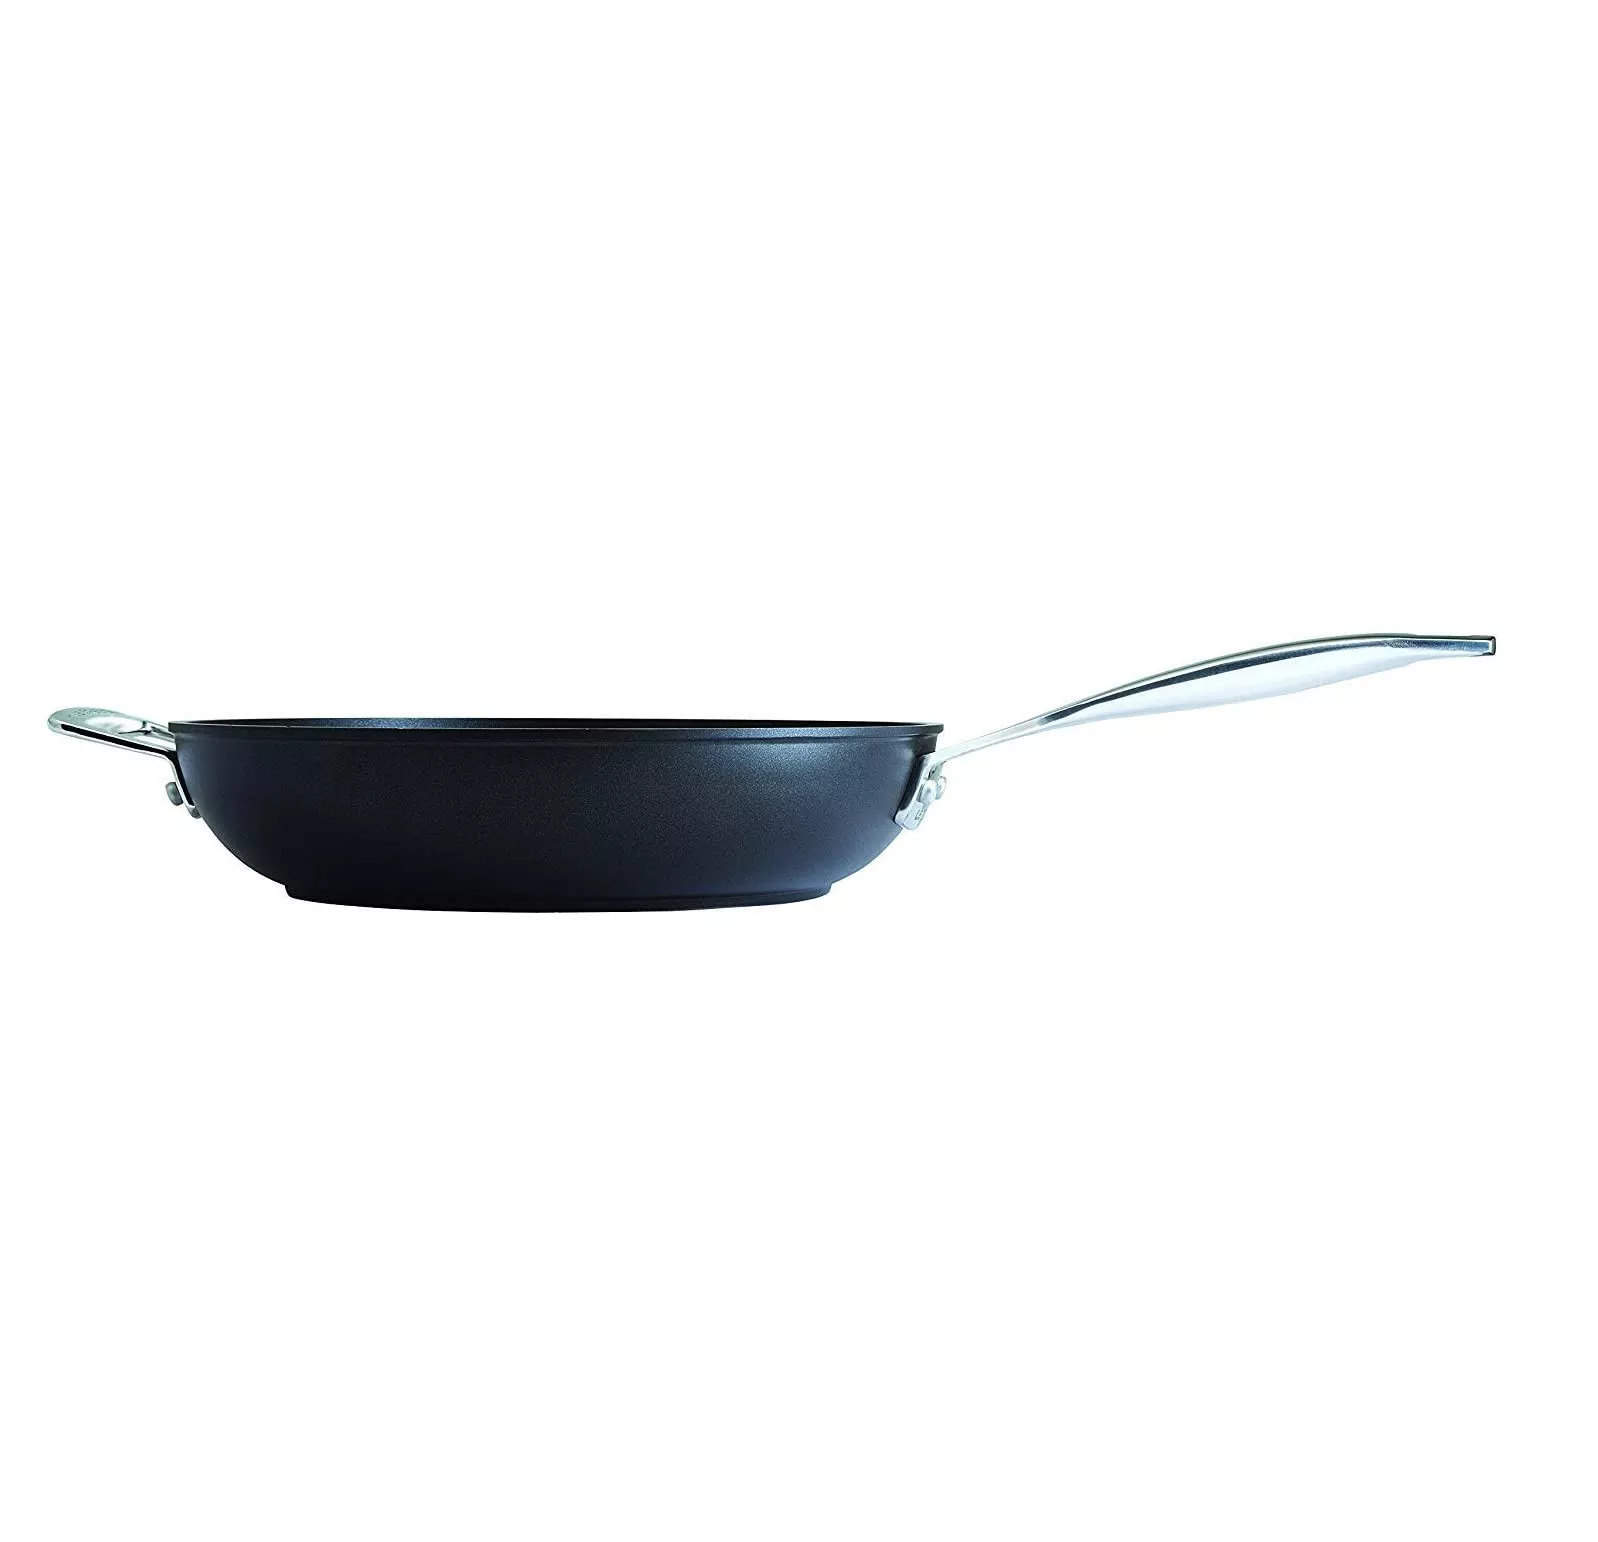 Сковорода глубокая антипригарная Le Creuset TNS&Cast Alu Black, диаметр 30 см (51101300010202) - Фото nav 3